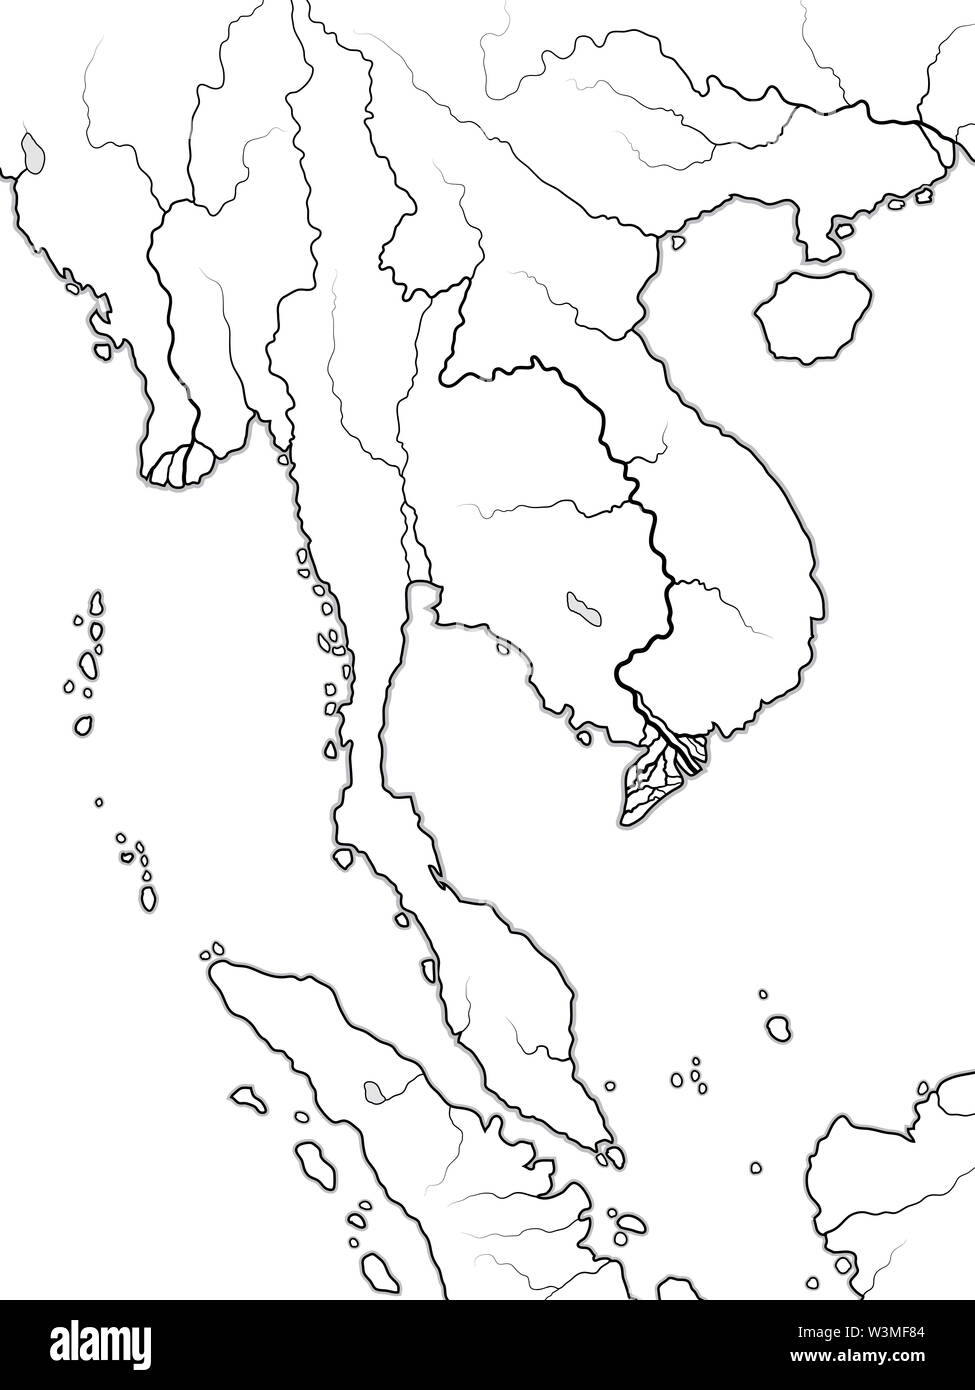 Mappa mondo dell Indocina: Asia del Sud, Penisola indocinese, Thailandia, Siam, Vietnam, Laos, Cambodja, Singapore, Malesia Malacca, birmania, myanmar. Foto Stock